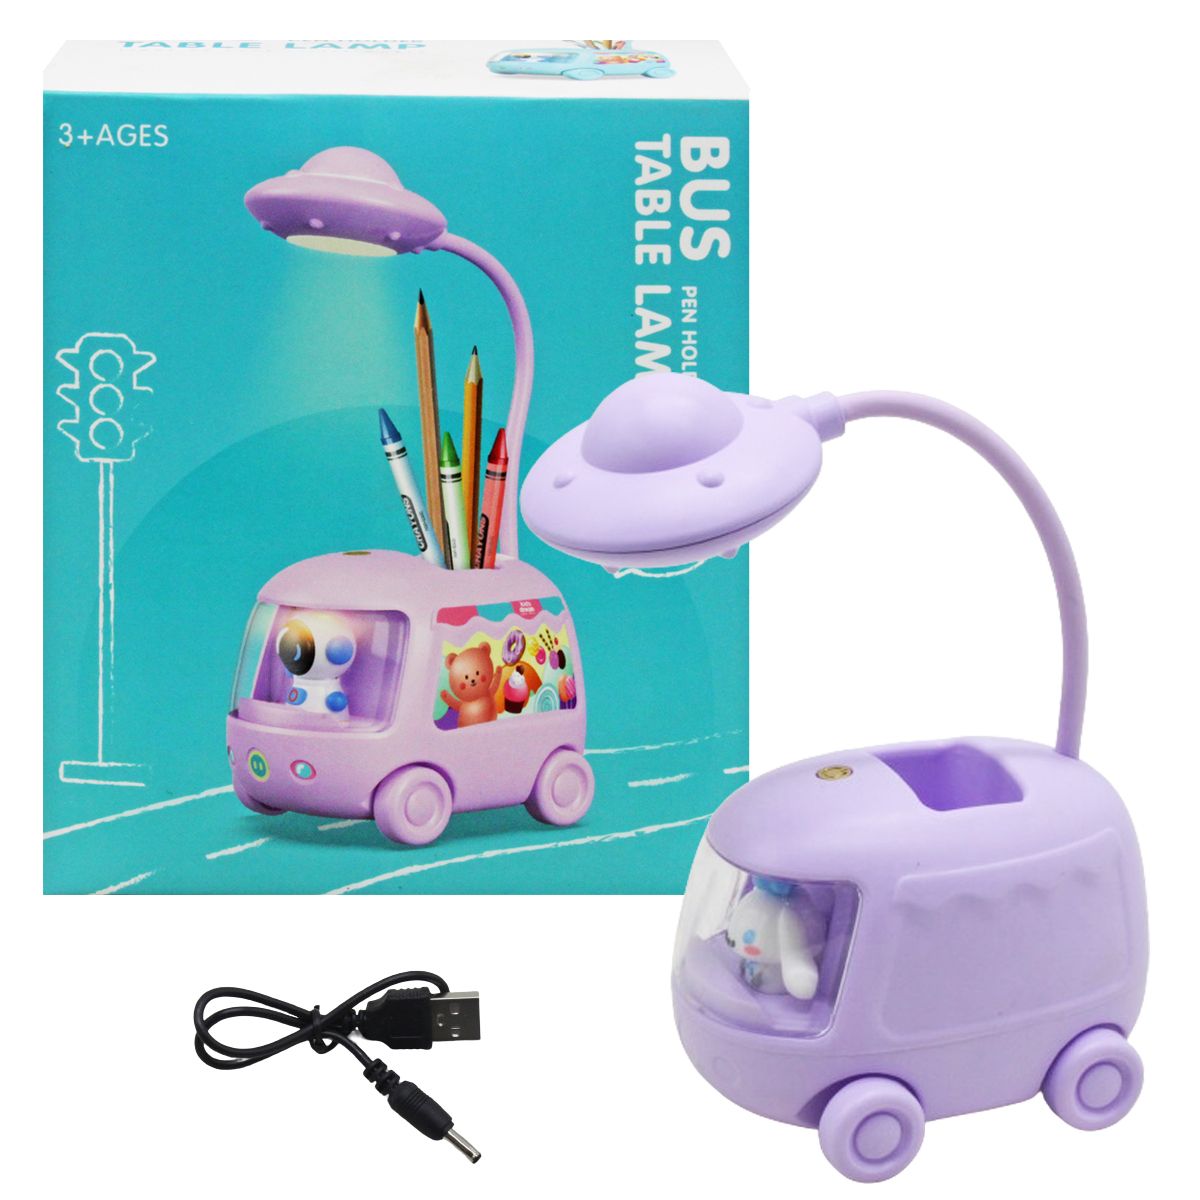 Детская настольная лампа "Bus", фиолетовая